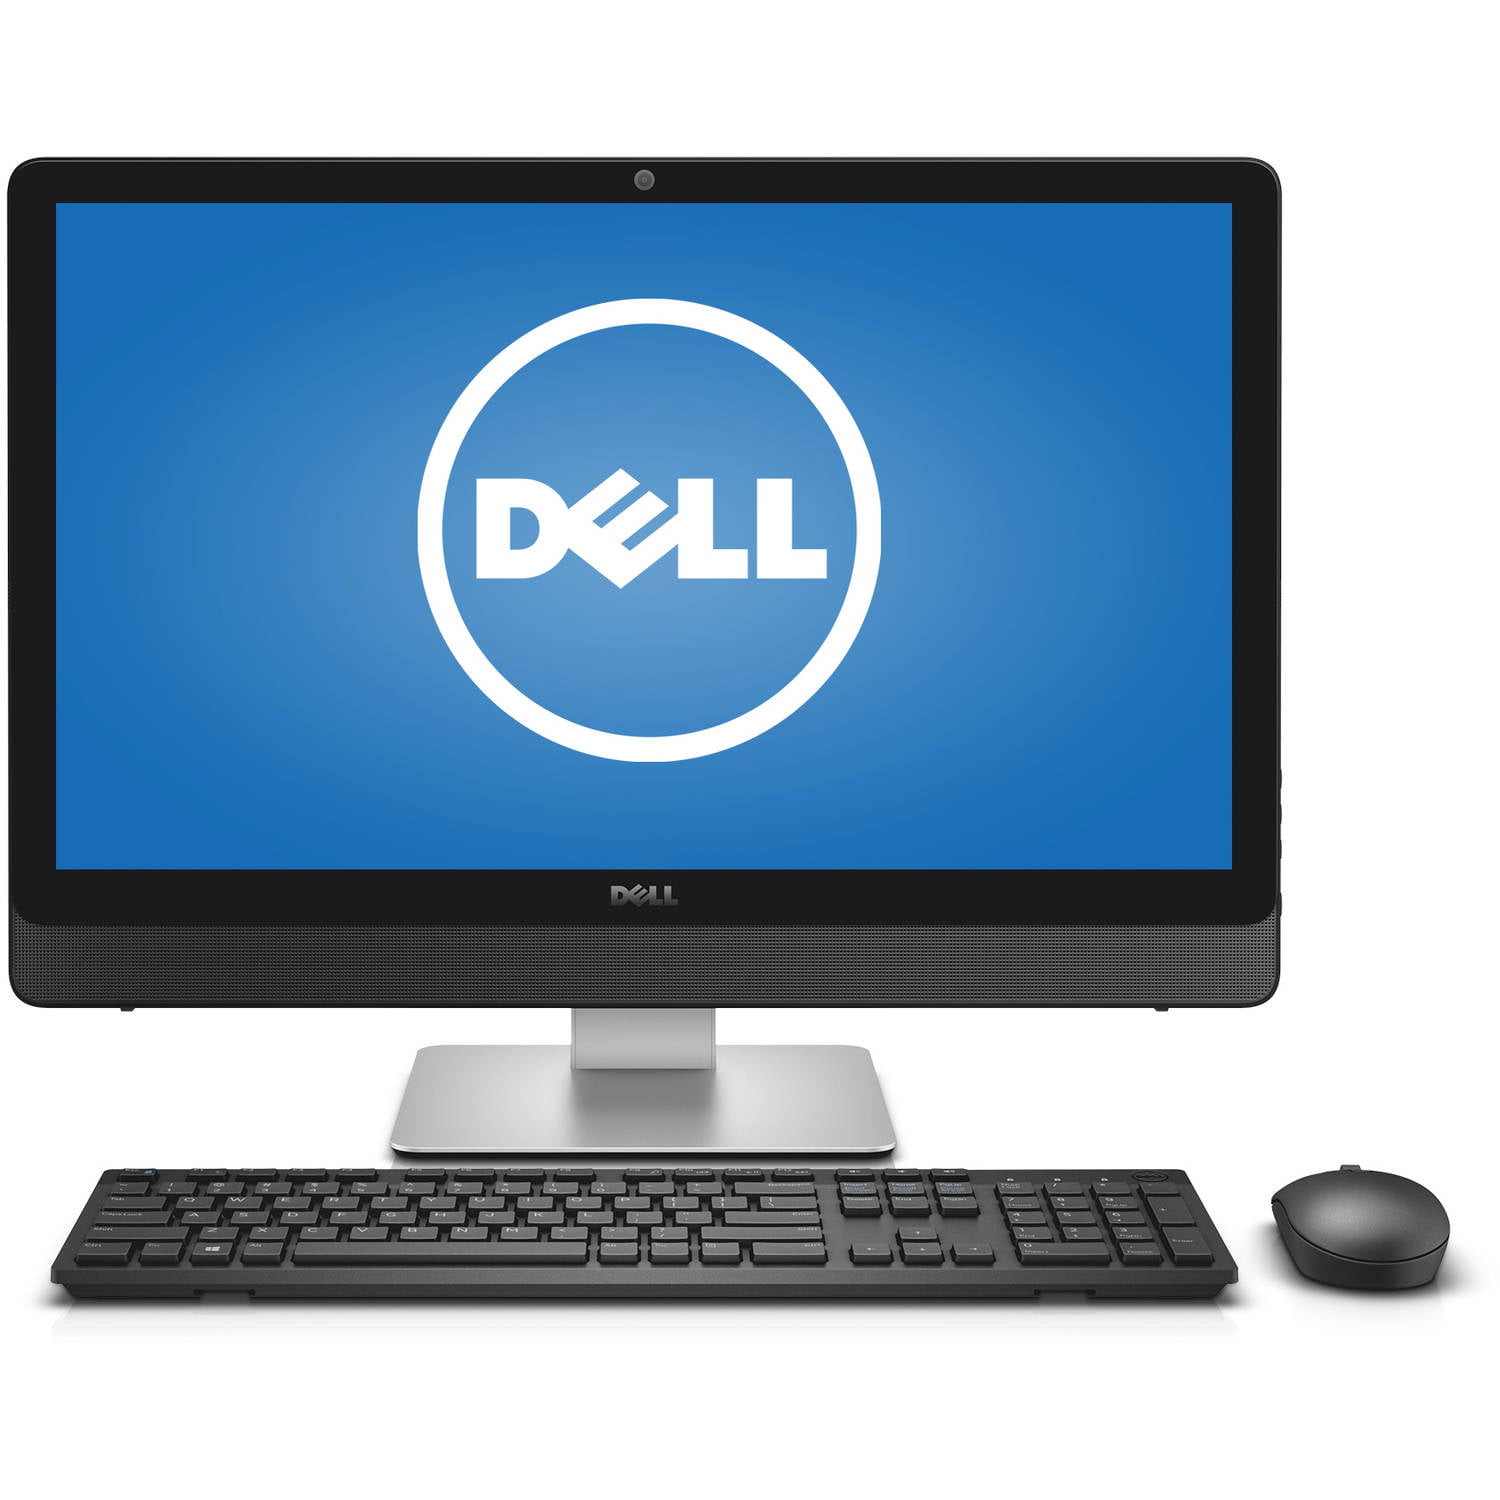 Dell Silver Inspiron 5459 All-In-One Desktop PC with Intel Core i5-6400T  Processor, 8GB Memory, 